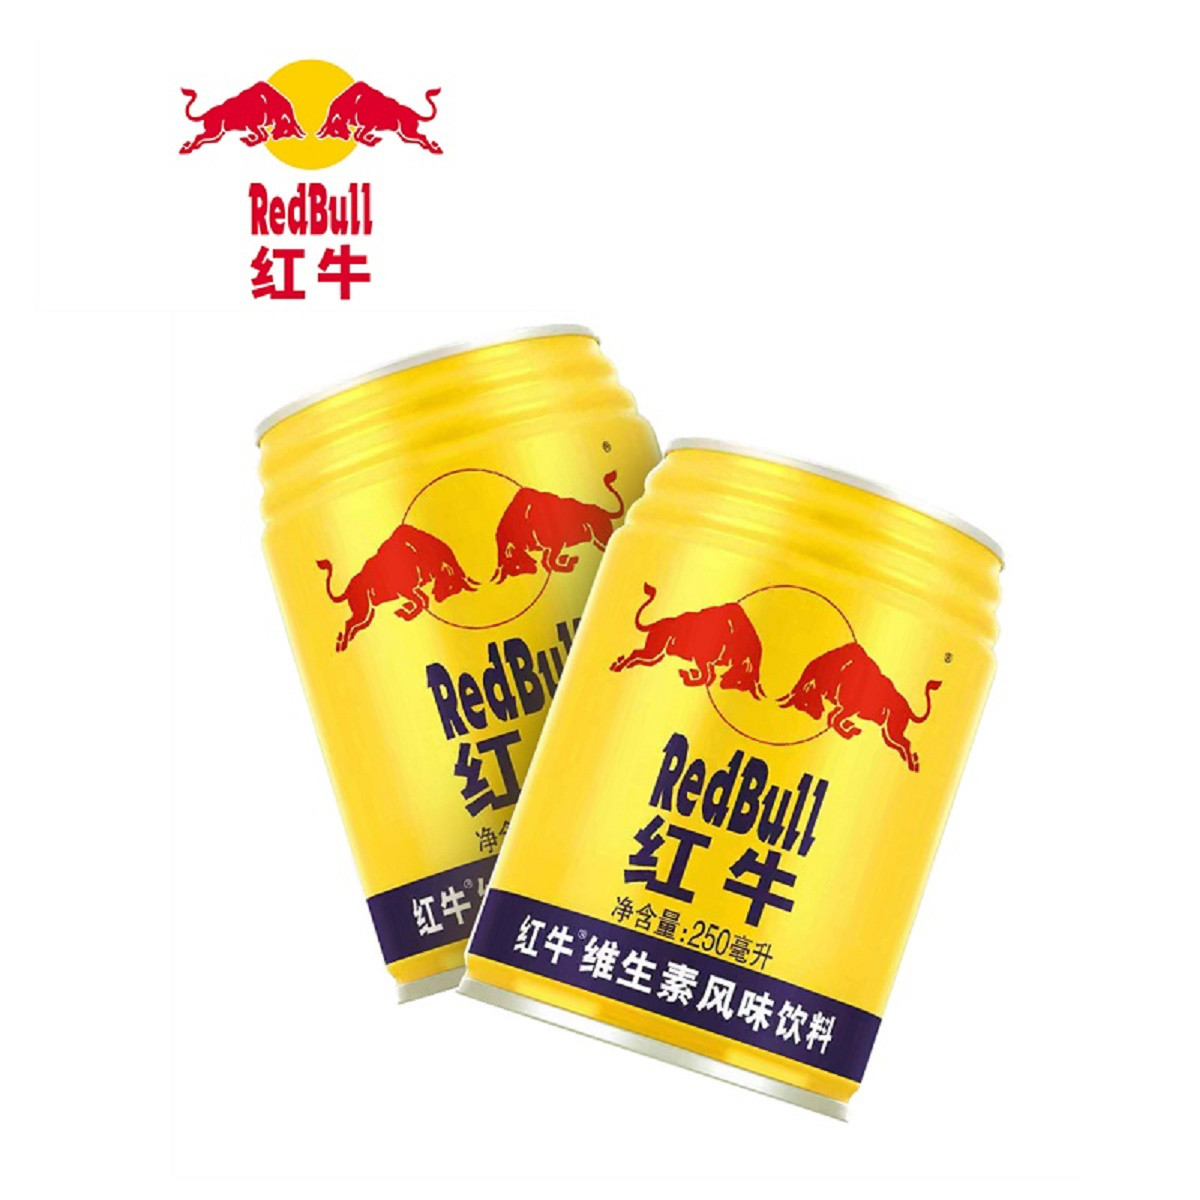 红牛(redbull)维生素风味运动功能饮料250ml*12罐 泰国进口